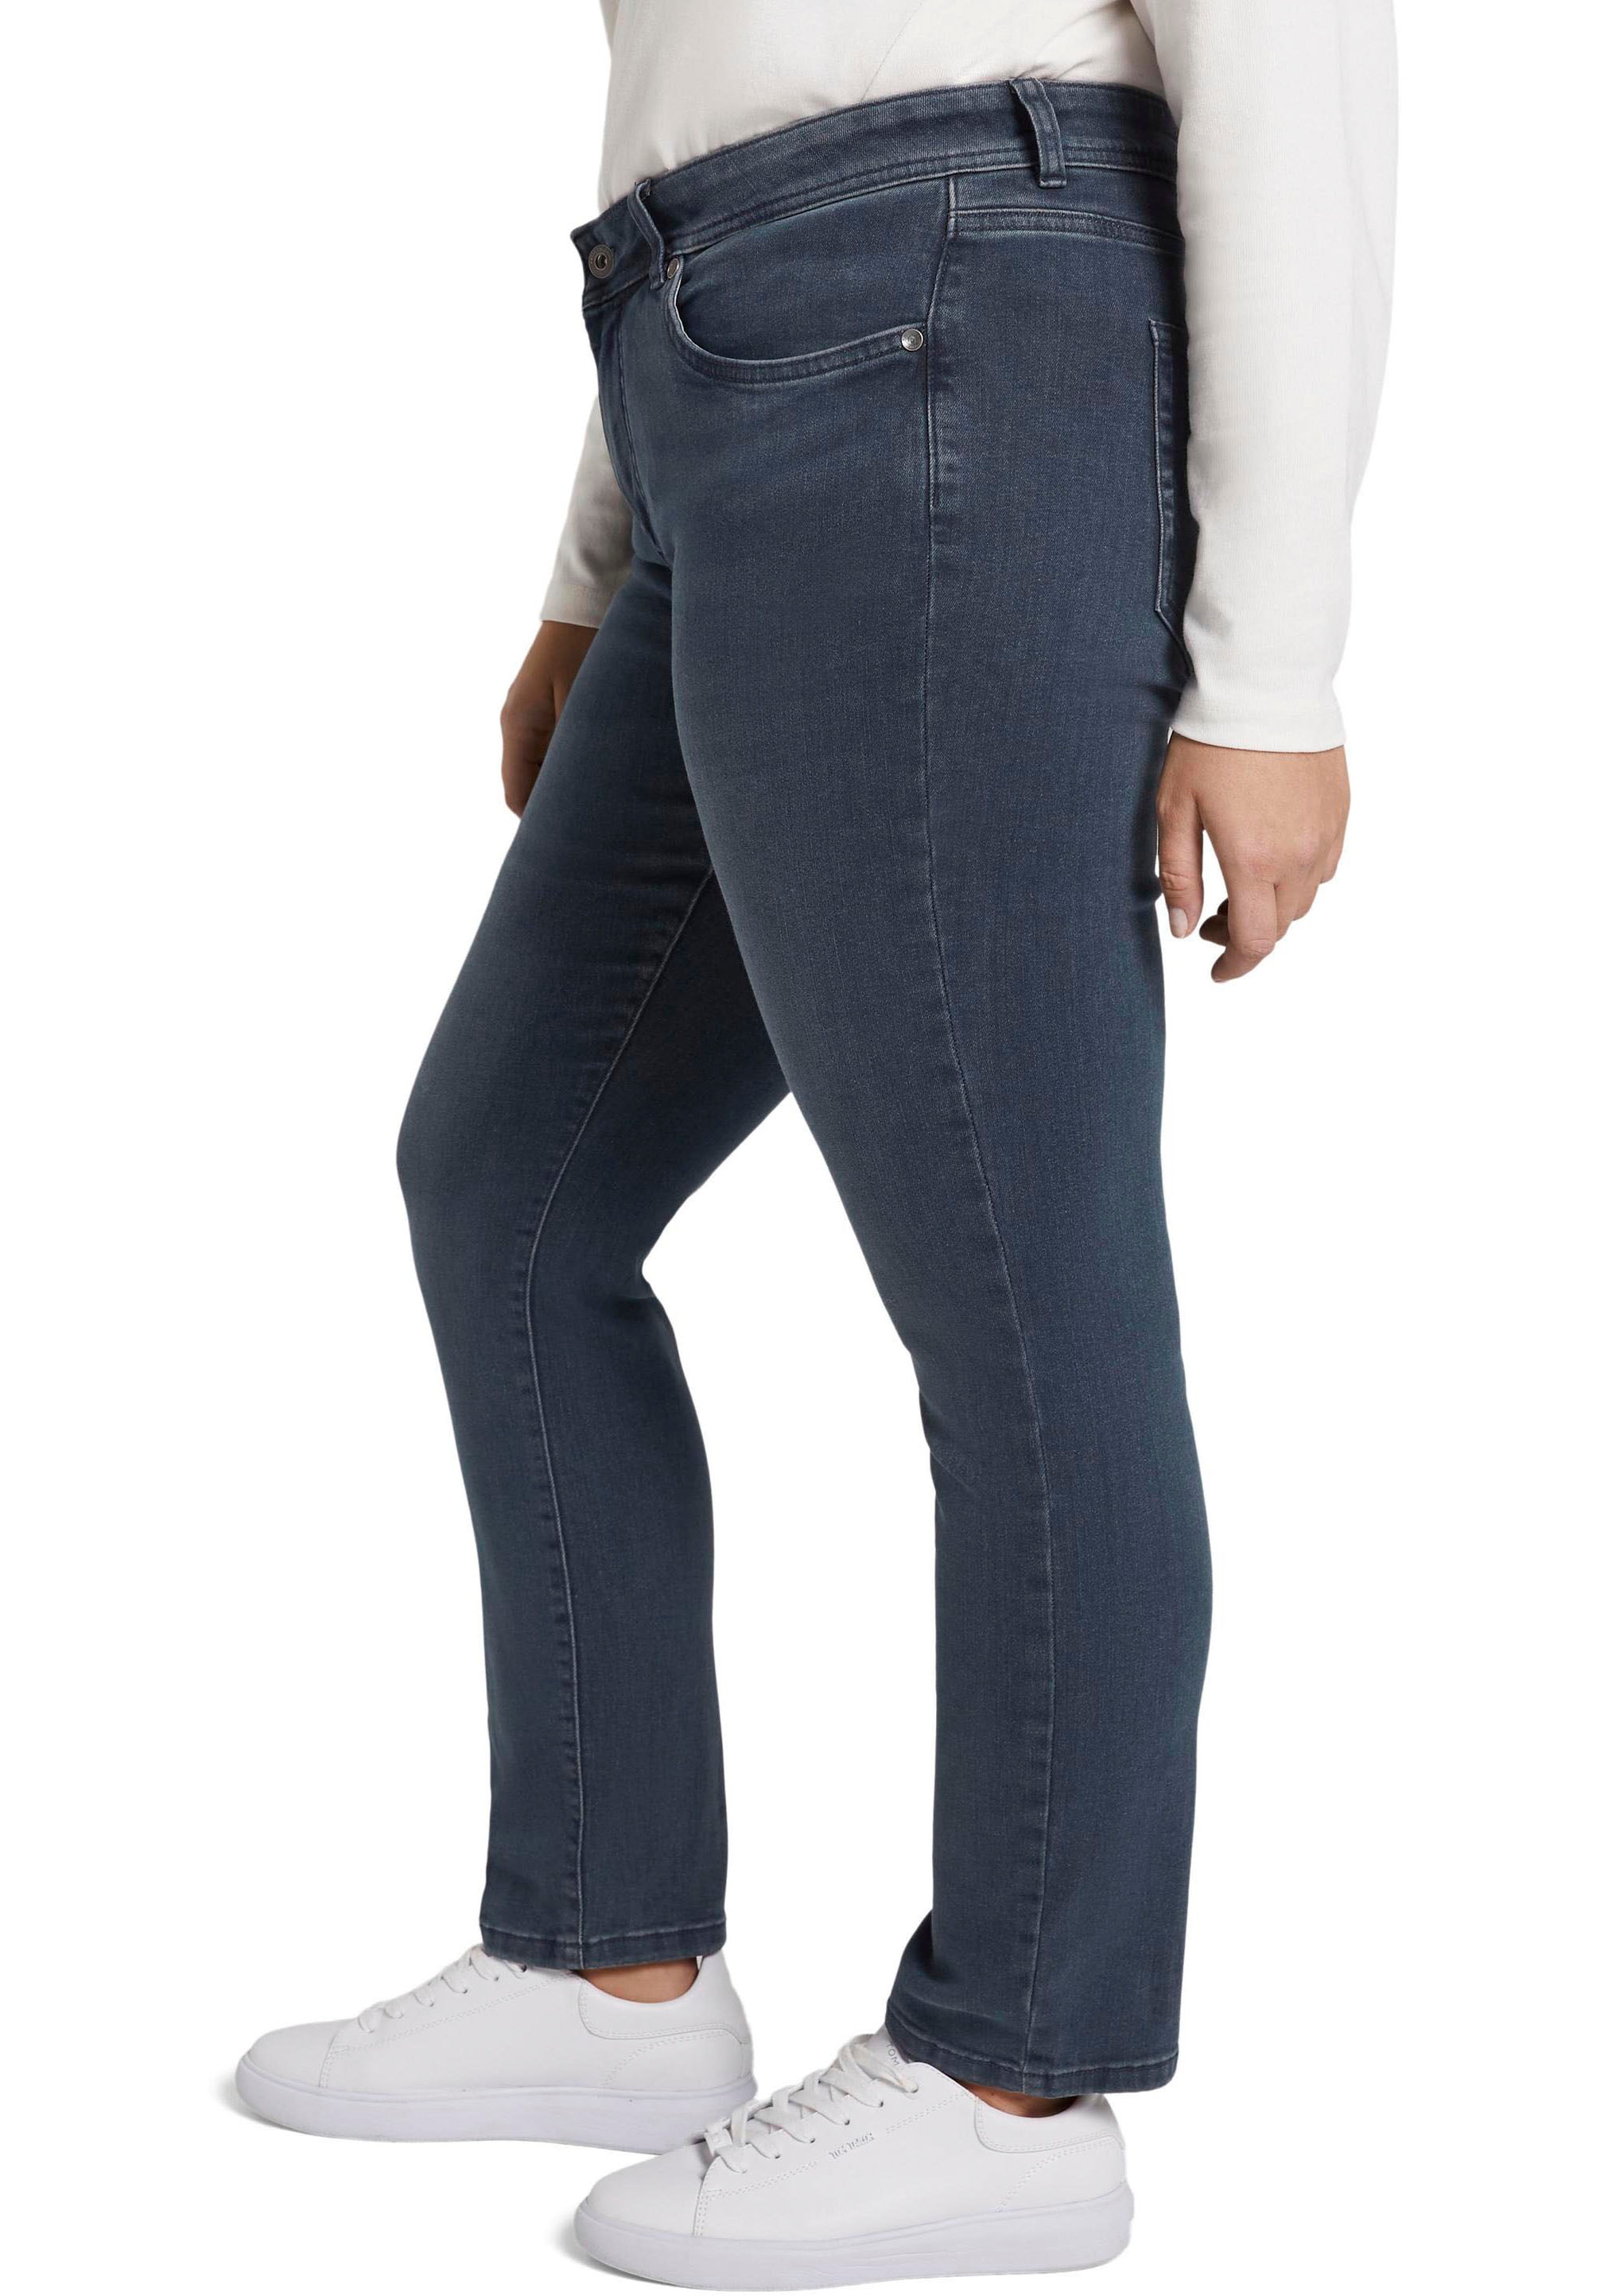 TAILOR OTTO im Online PLUS Slim-fit-Jeans TOM Shop